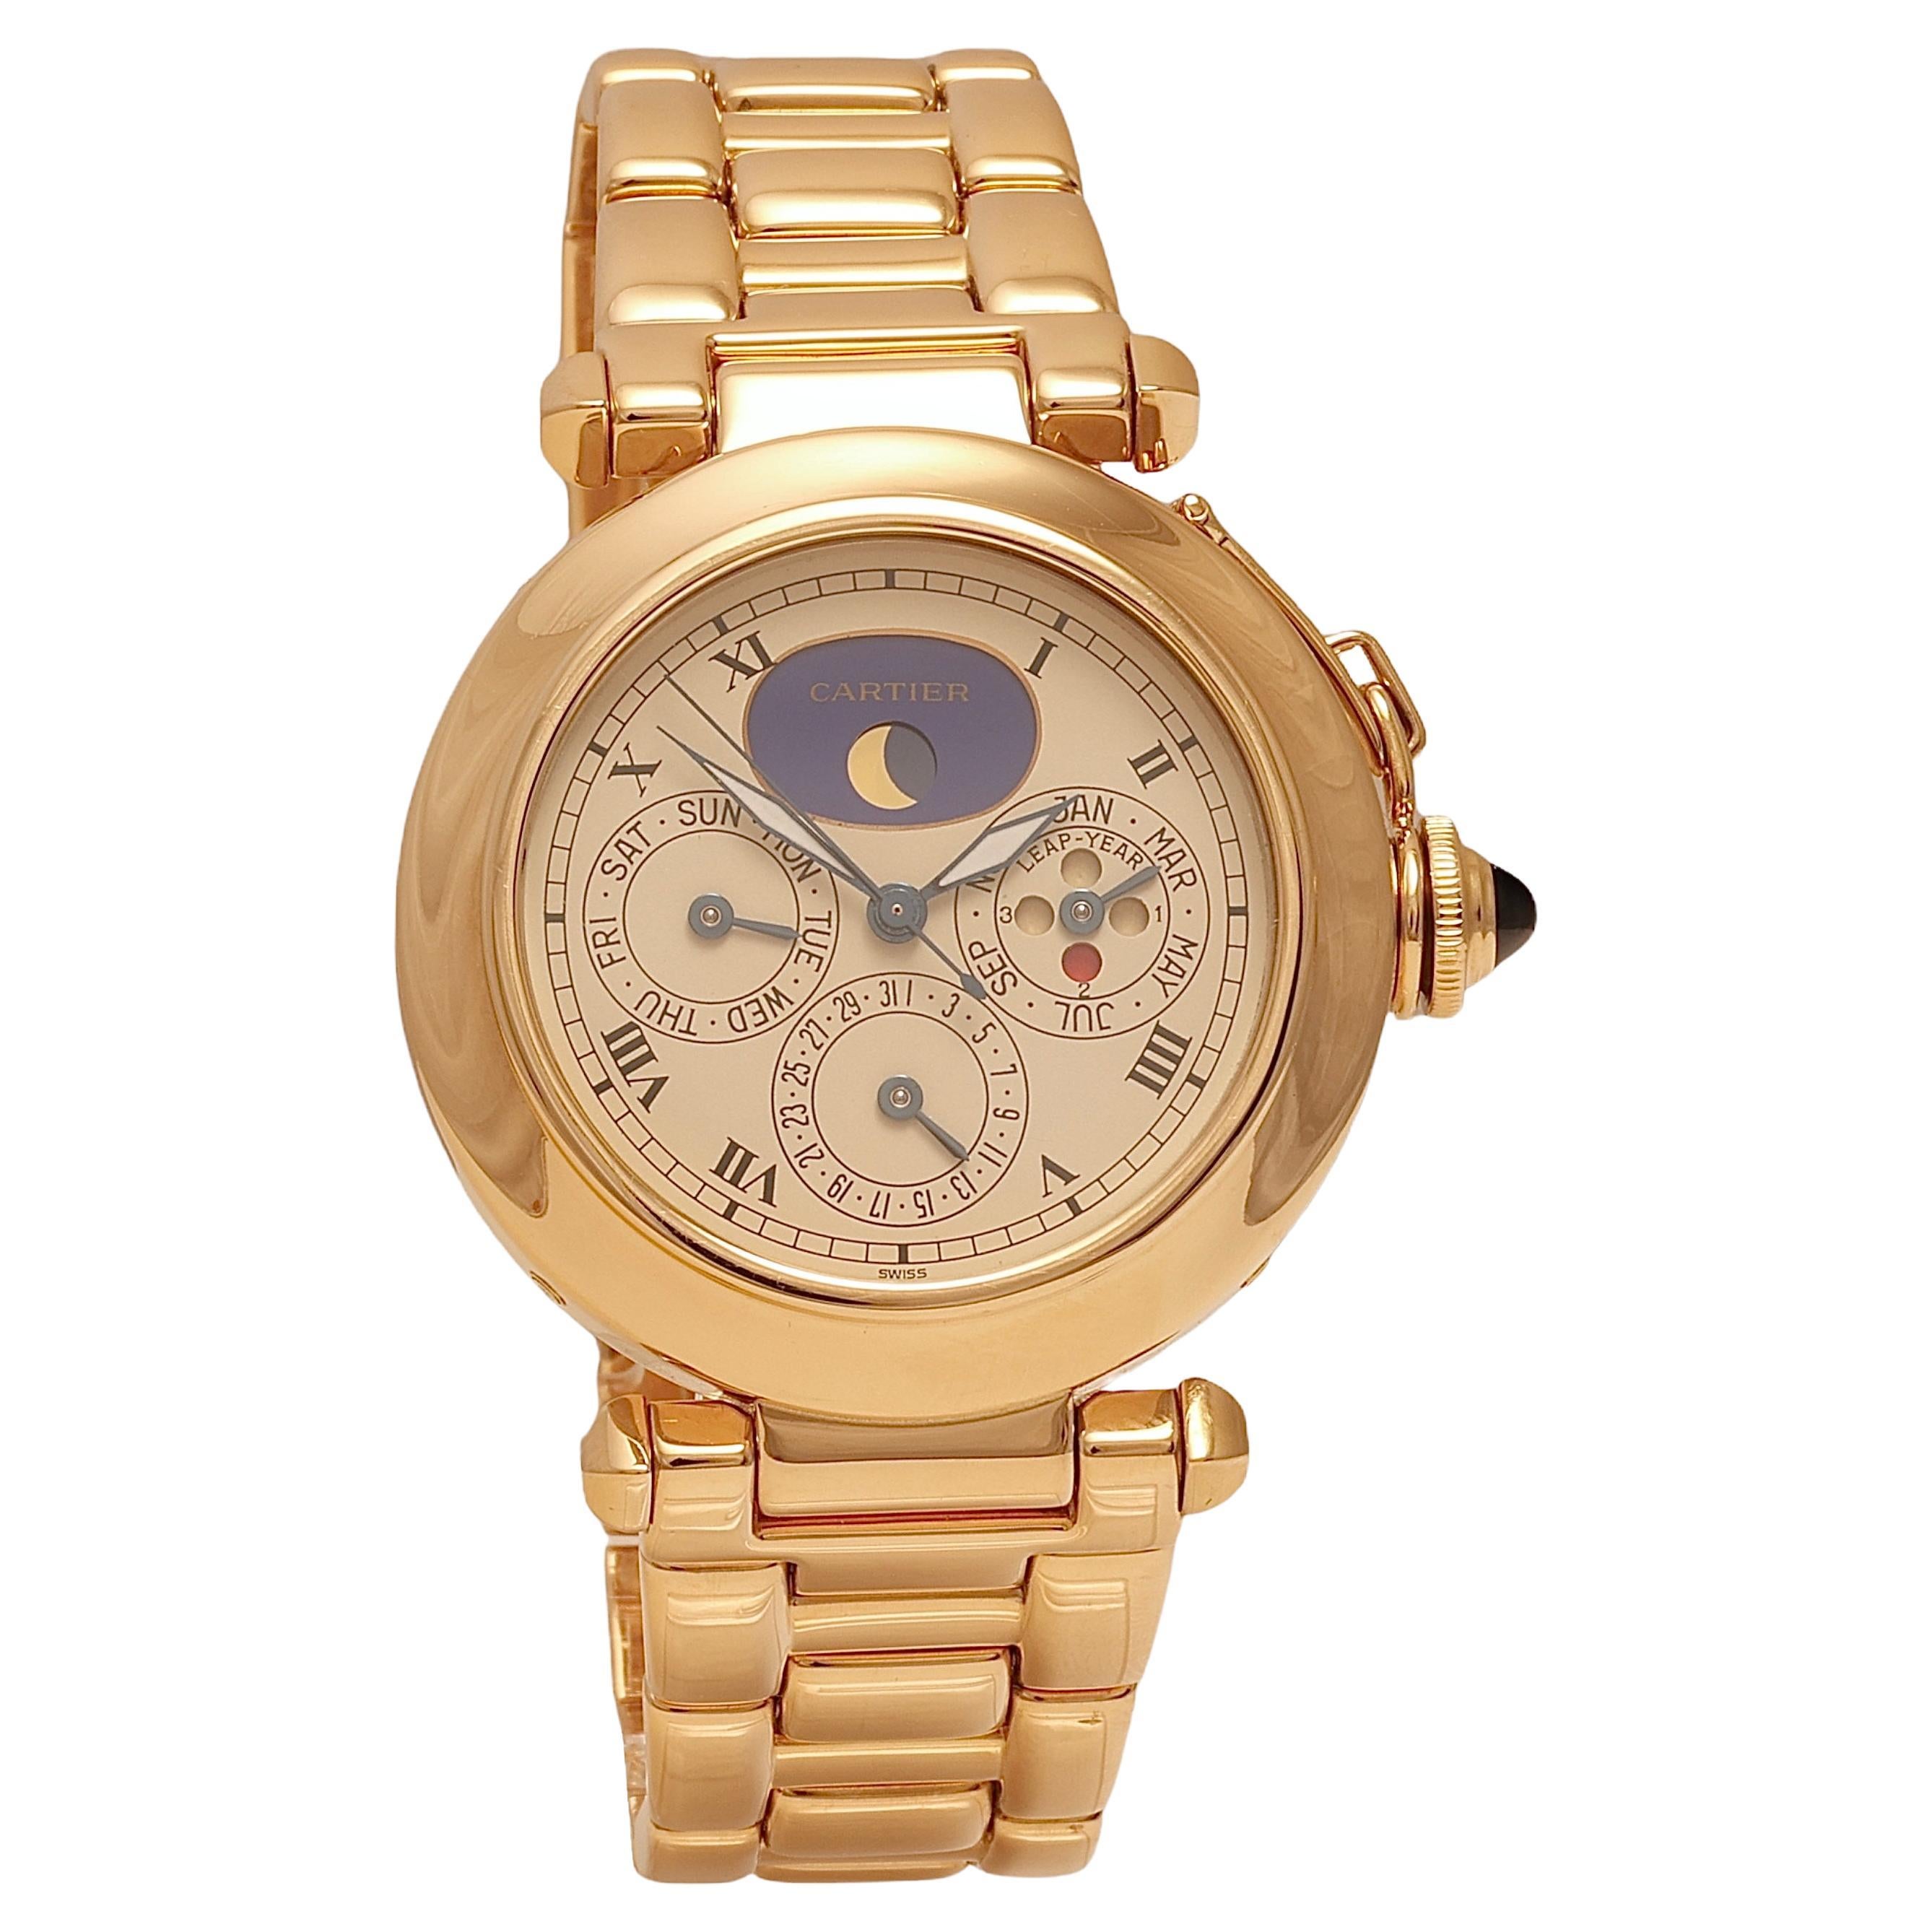 18 Kt Cartier Pasha Perpetual Calendar Armbanduhr, Tagesdatum Monatsdatum Mondphase